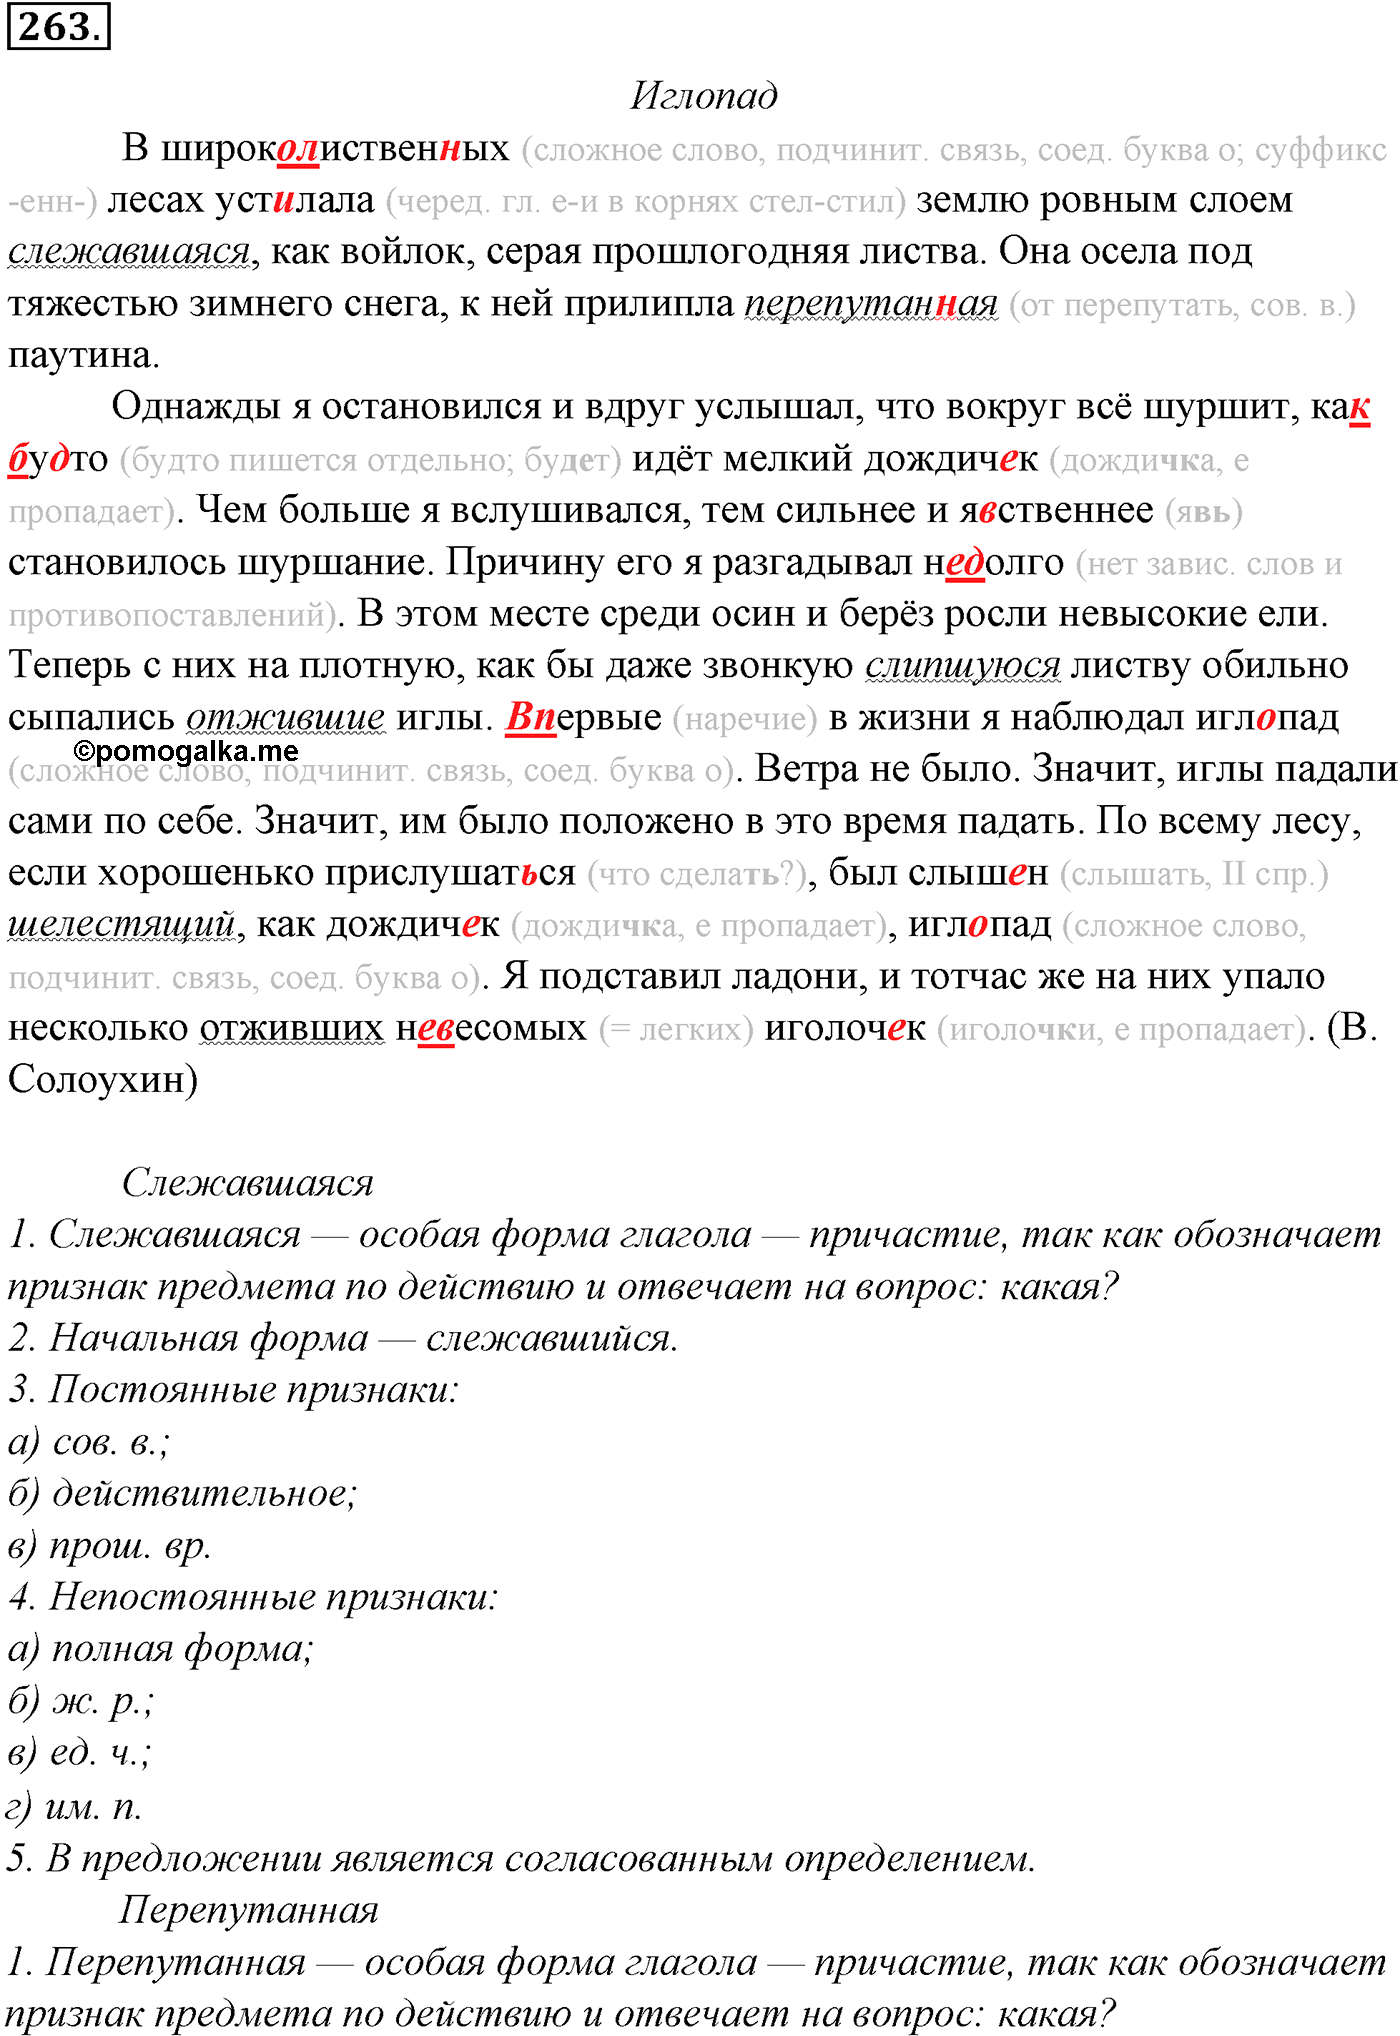 упражнение №263 русский язык 10-11 класс Гольцова